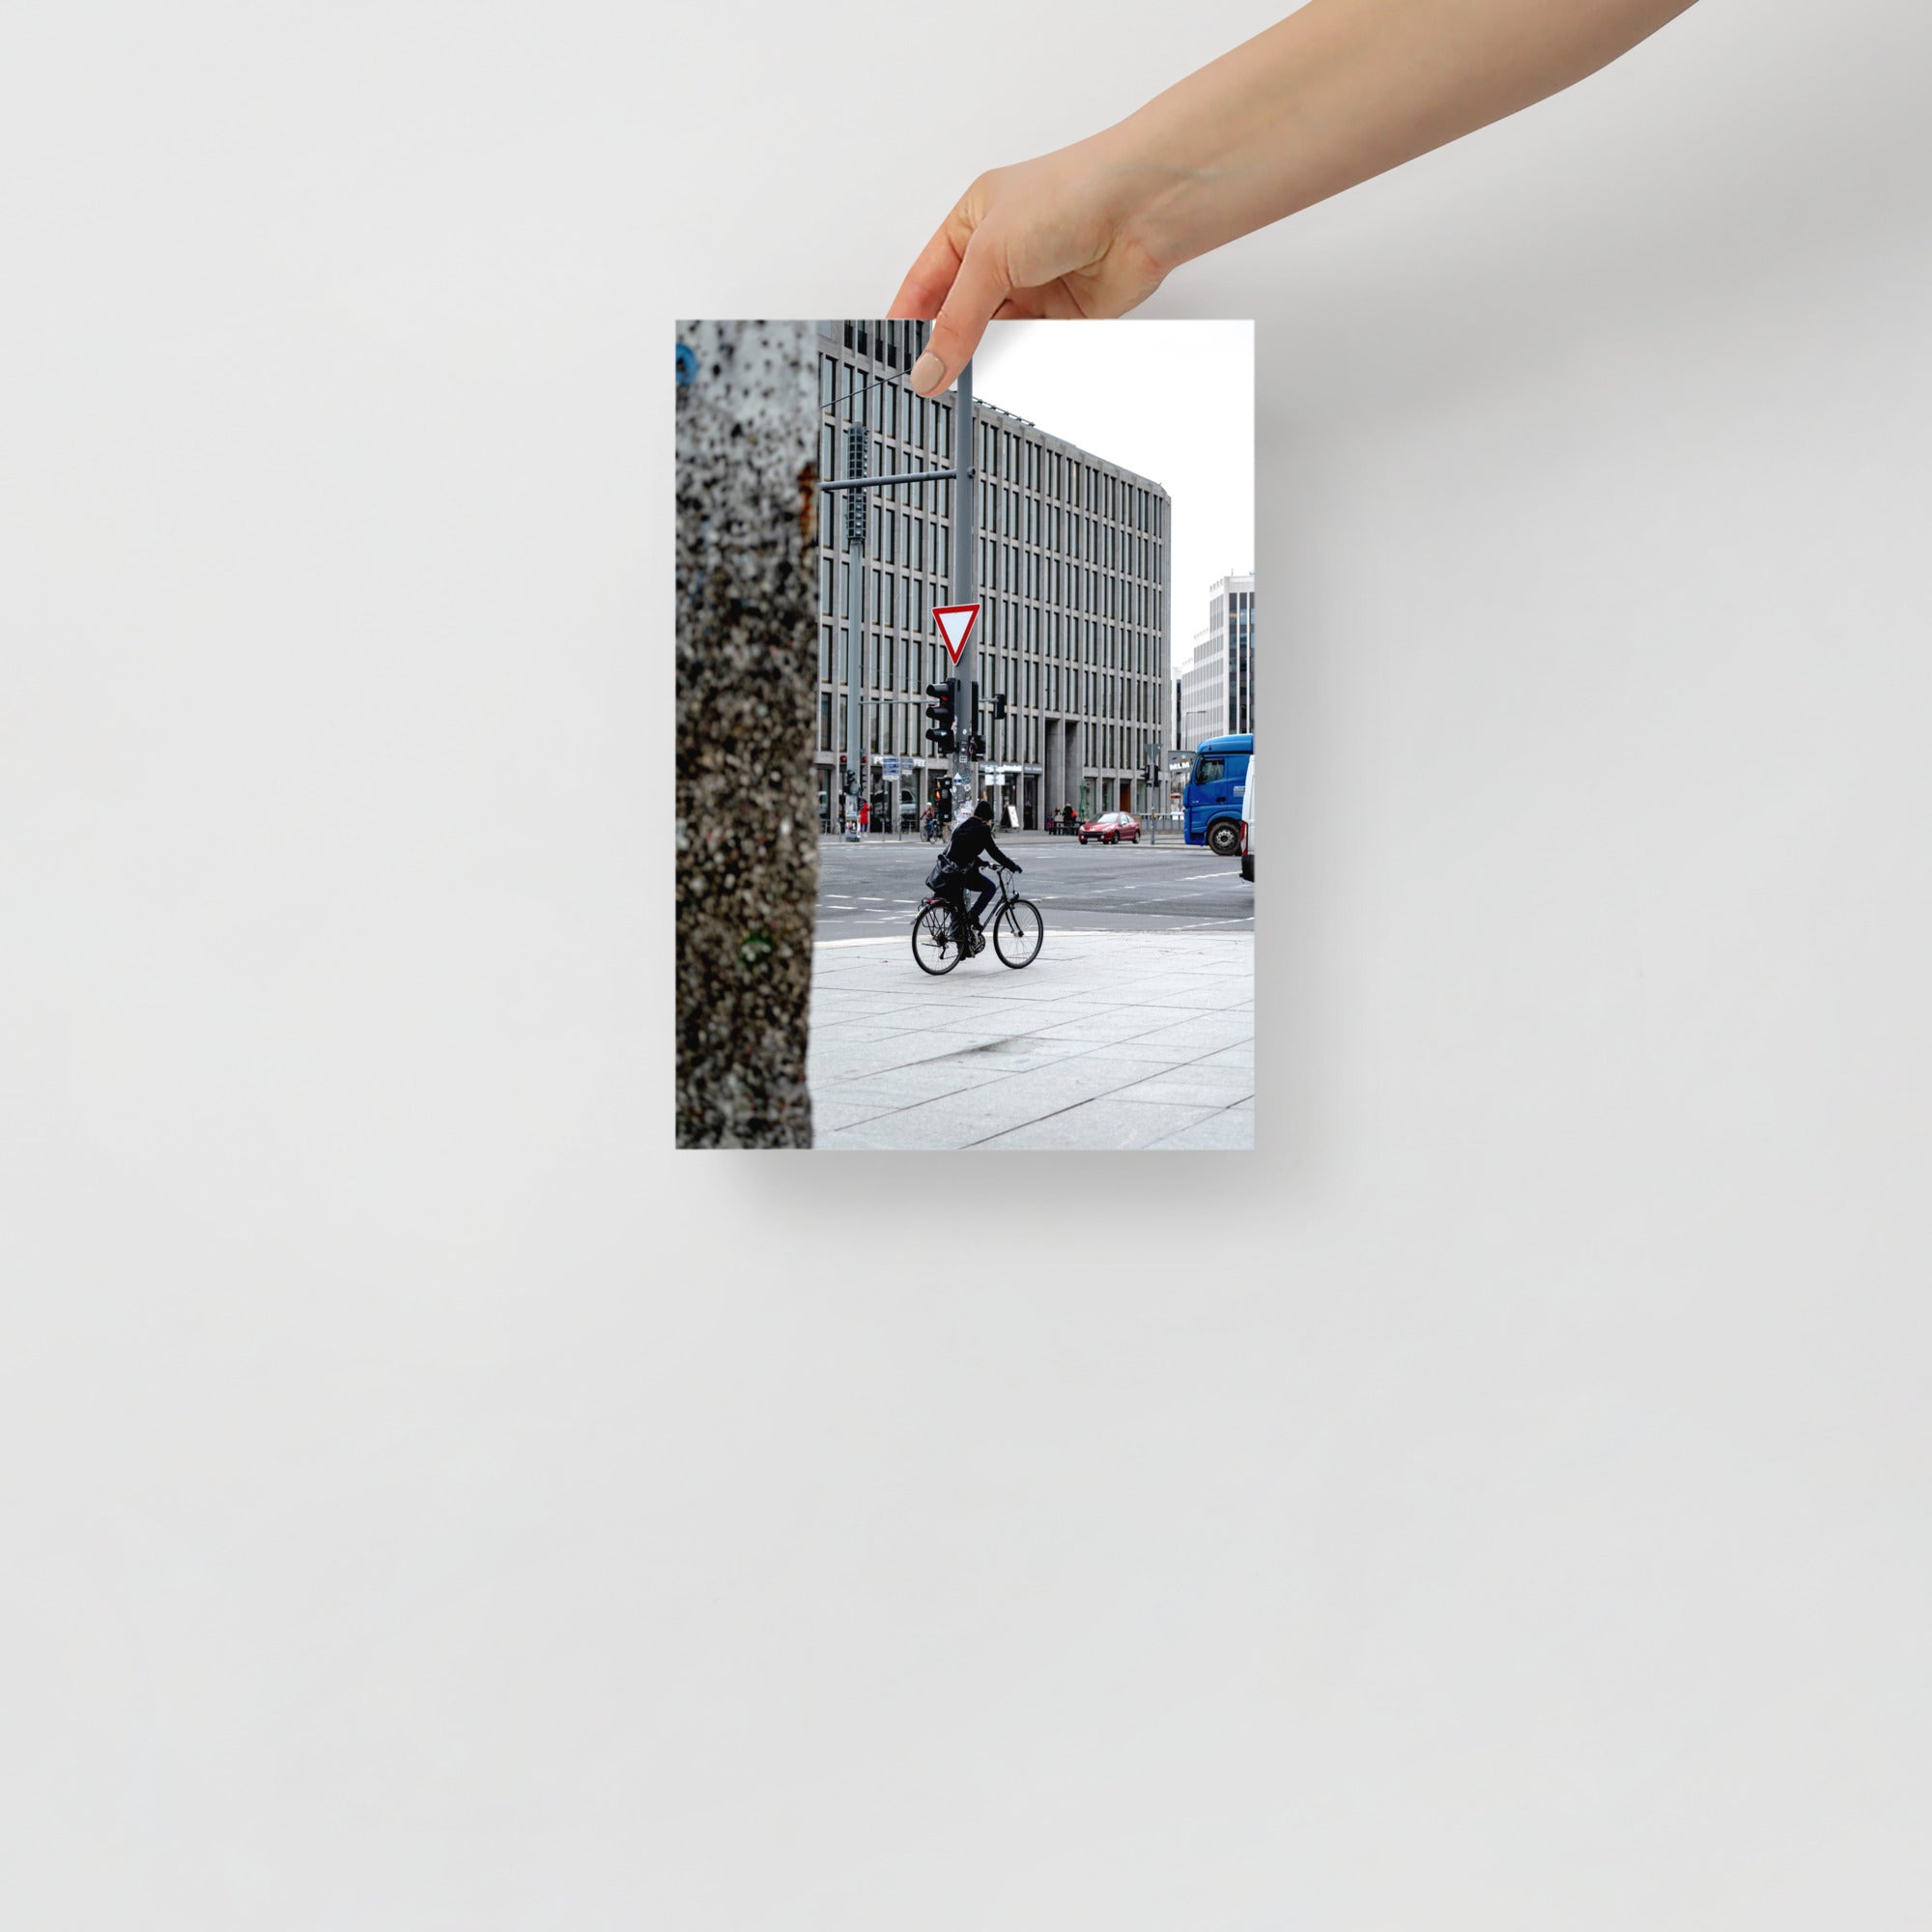 Poster mural - Photo de rue N08 – Photographie de rue de ville à Berlin – Poster photo, poster XXL, photographie murale et des posters muraux unique au monde. La boutique de posters créée par Yann Peccard un Photographe français.